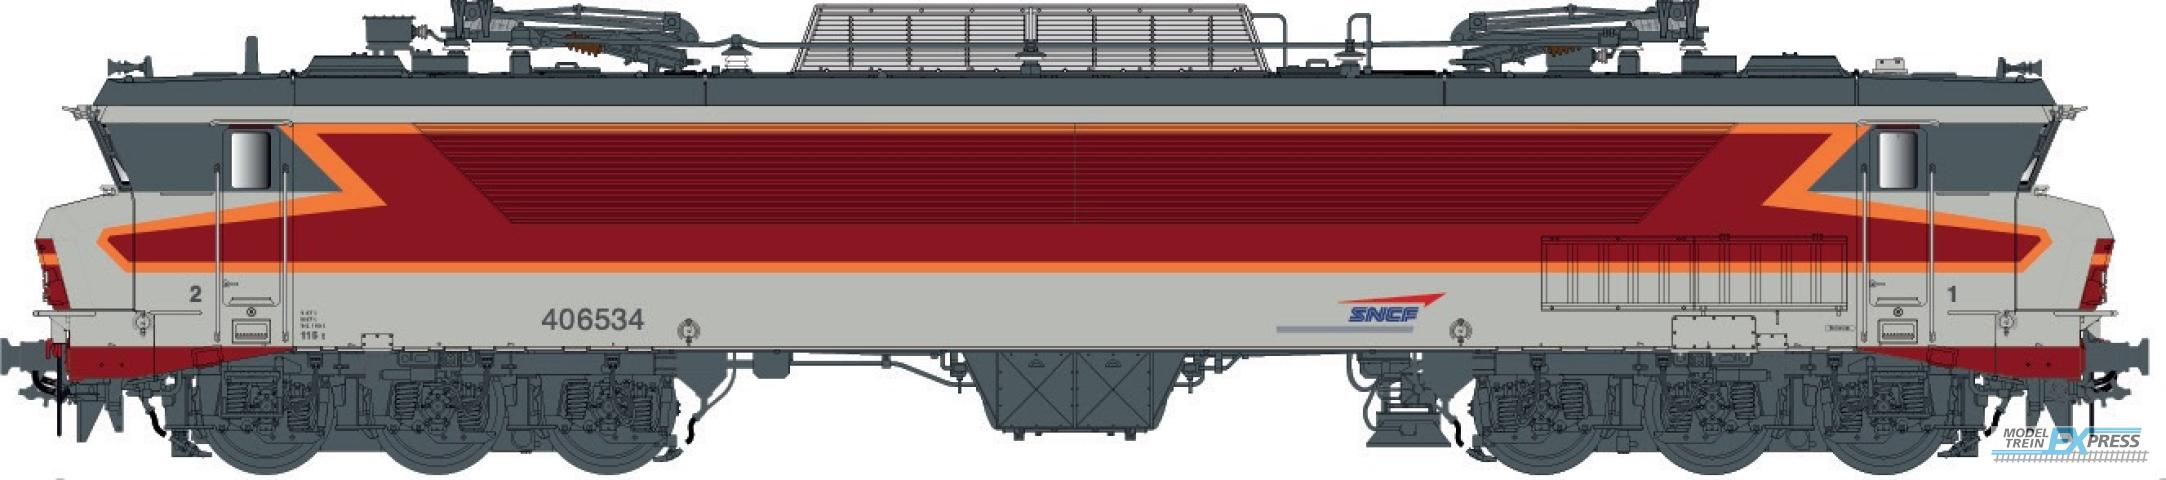 LS Models 10330 CC 6534, grey/red/orange, livery ARZENS, logo cap,Vénissieux depot  /  Ep. V  /  SNCF  /  HO  /  DC  /  1 P.